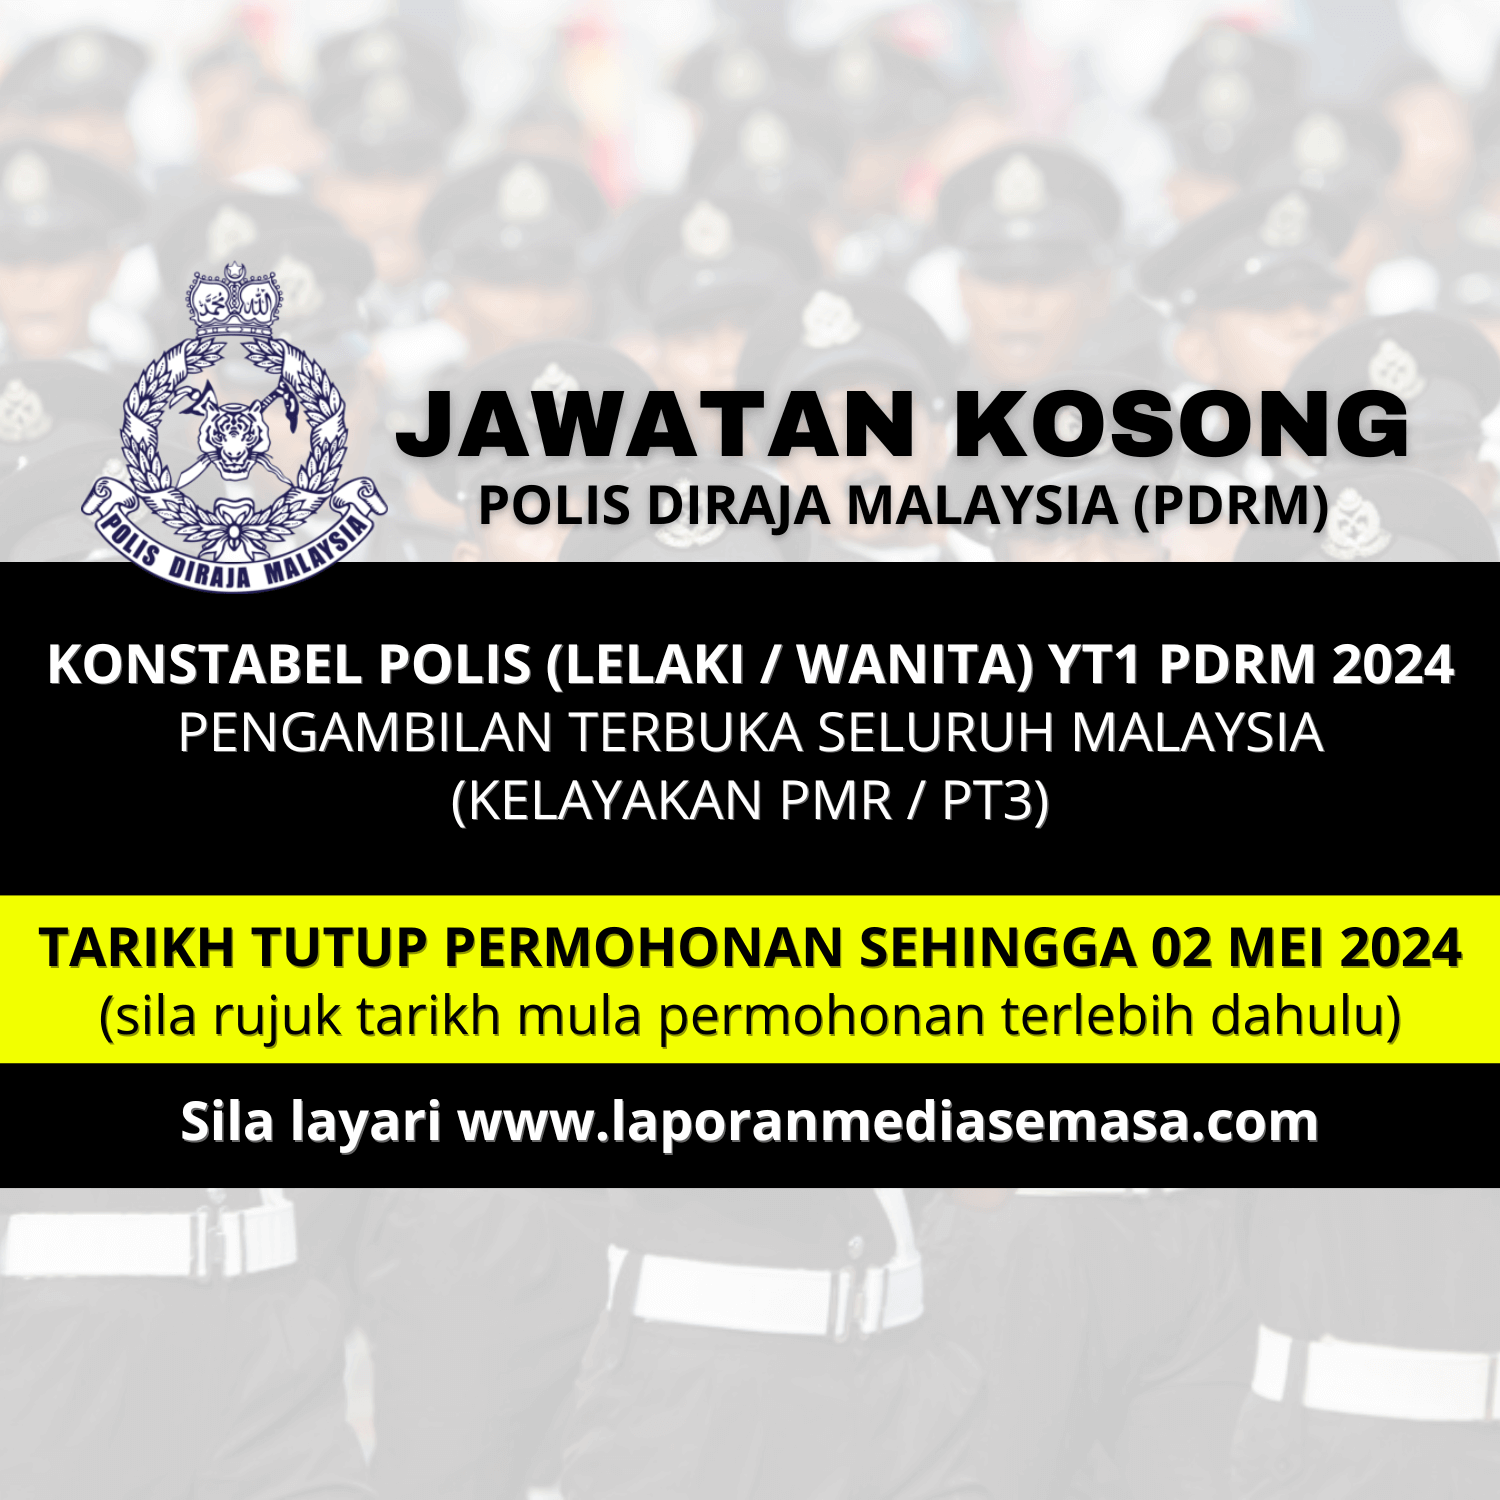 Jawatan Kosong Polis Diraja Malaysia